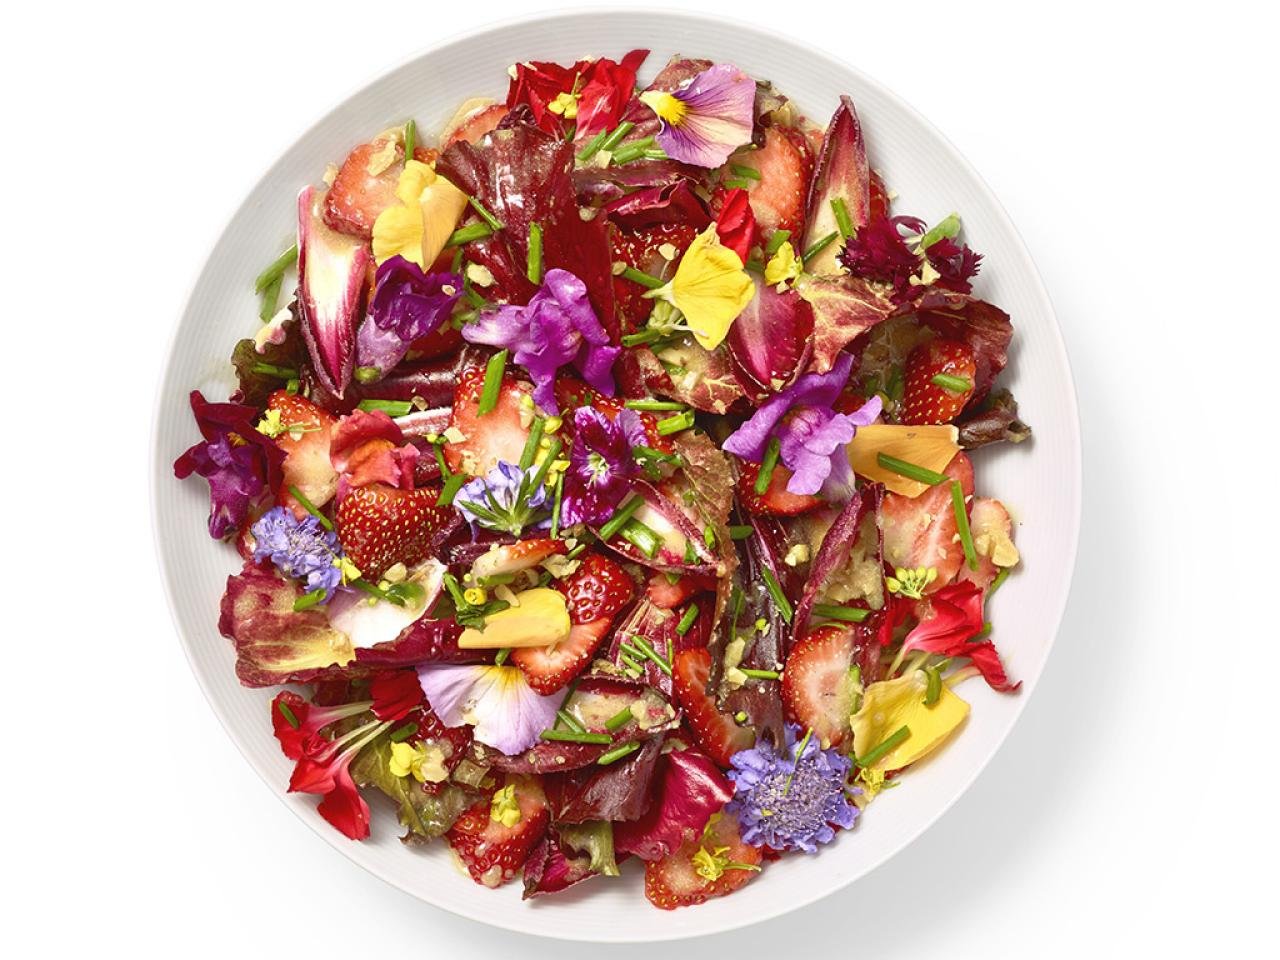 Салат съедобный. Съедобные цветы. Салат с съедобными цветами. Съедобные тарелки. Съедобные цветы в кулинарии.